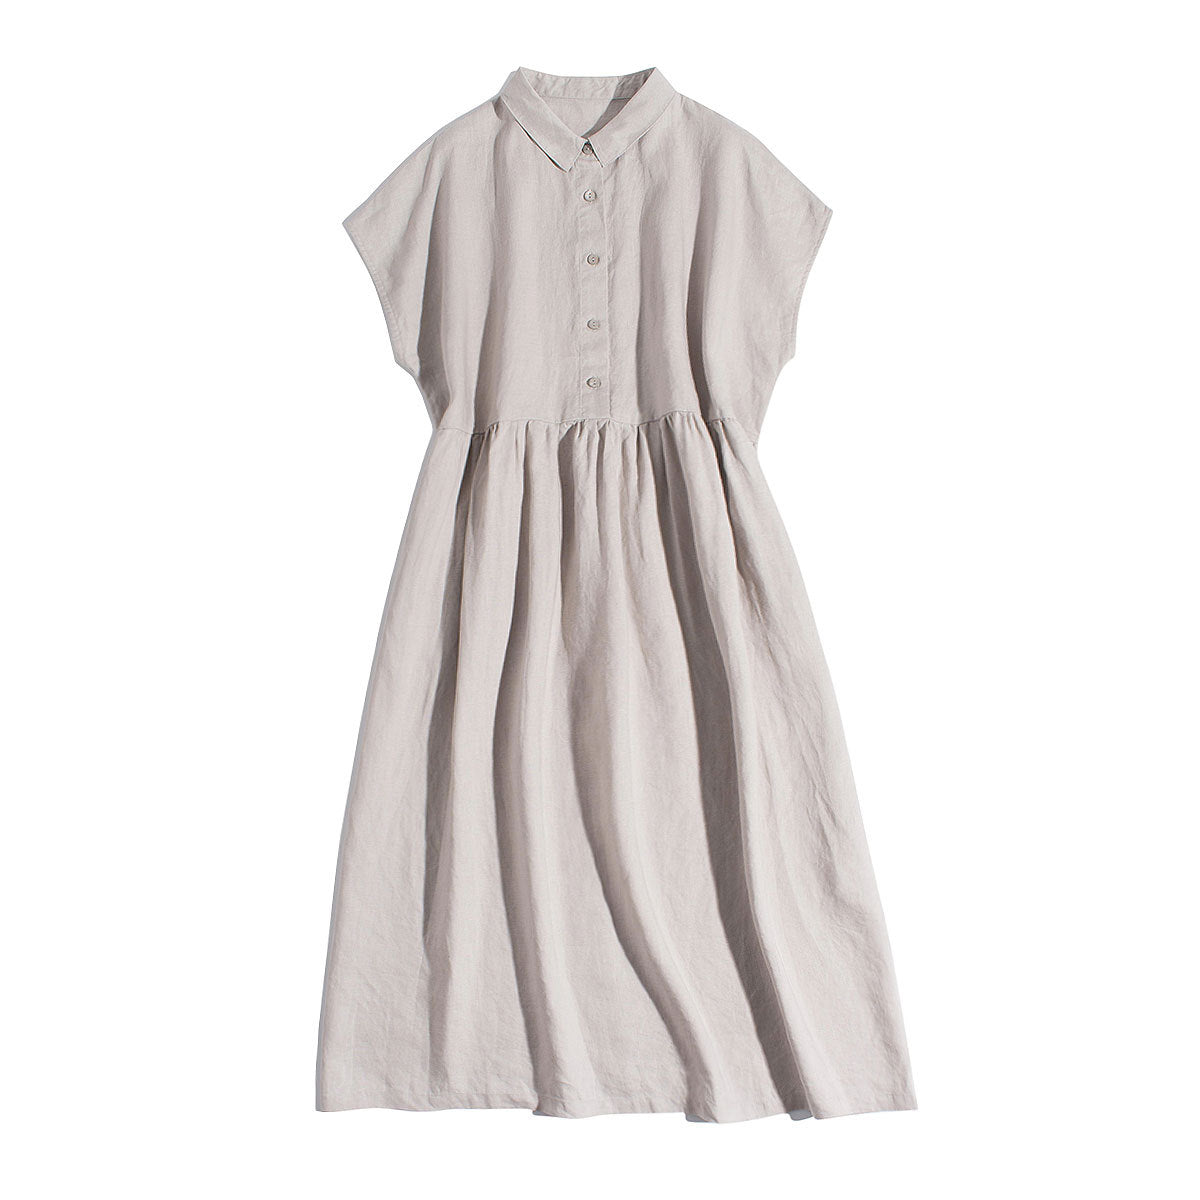 NTG Fad Cotton Linen Summer Casual Turn-Down Collar Button Up Shirt Dress